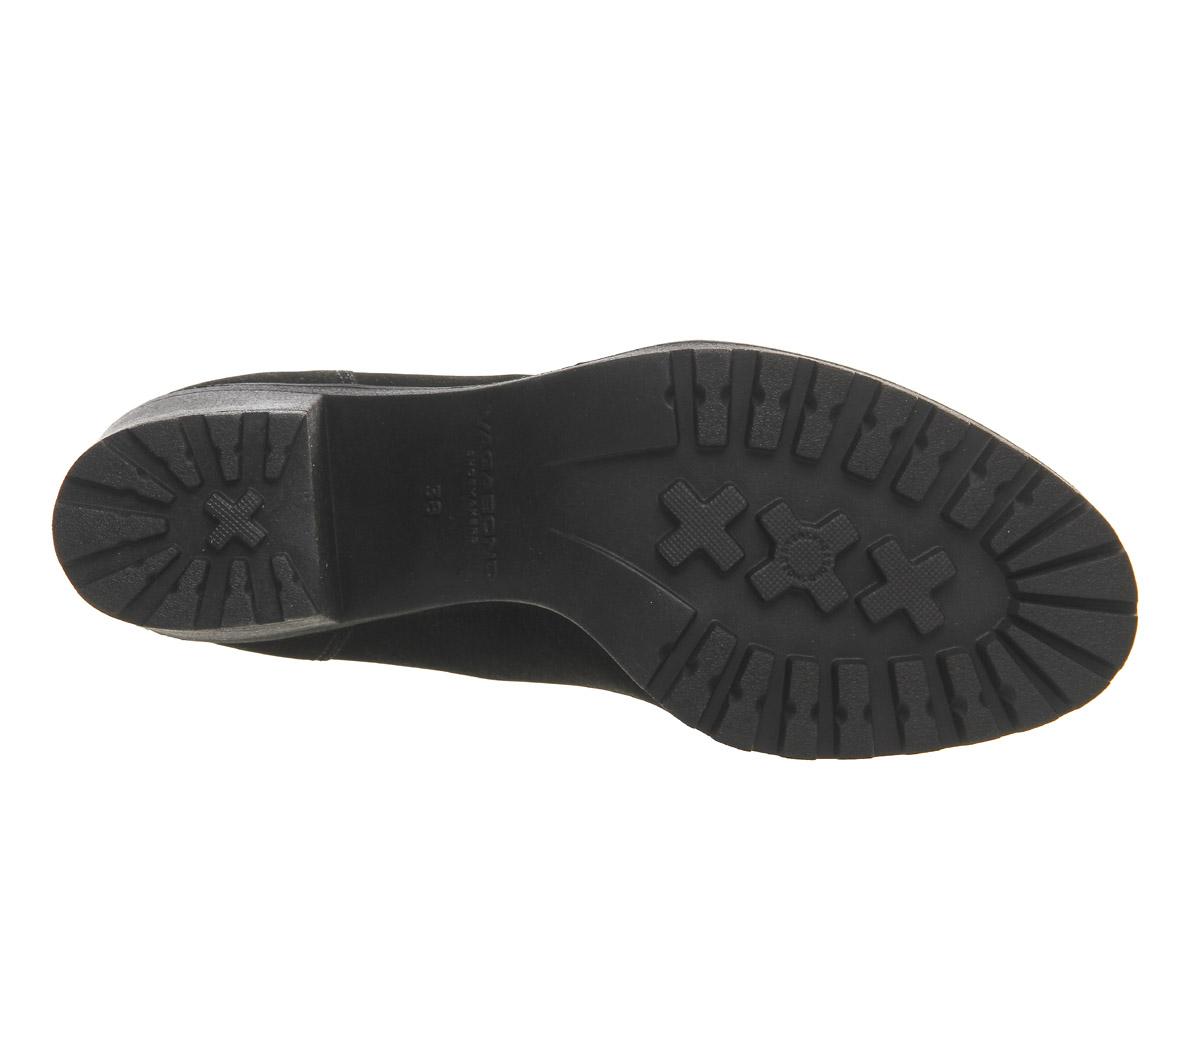 Vagabond Shoemakers Grace Lace Up Boots Black Nubuck - Women's Ankle Boots